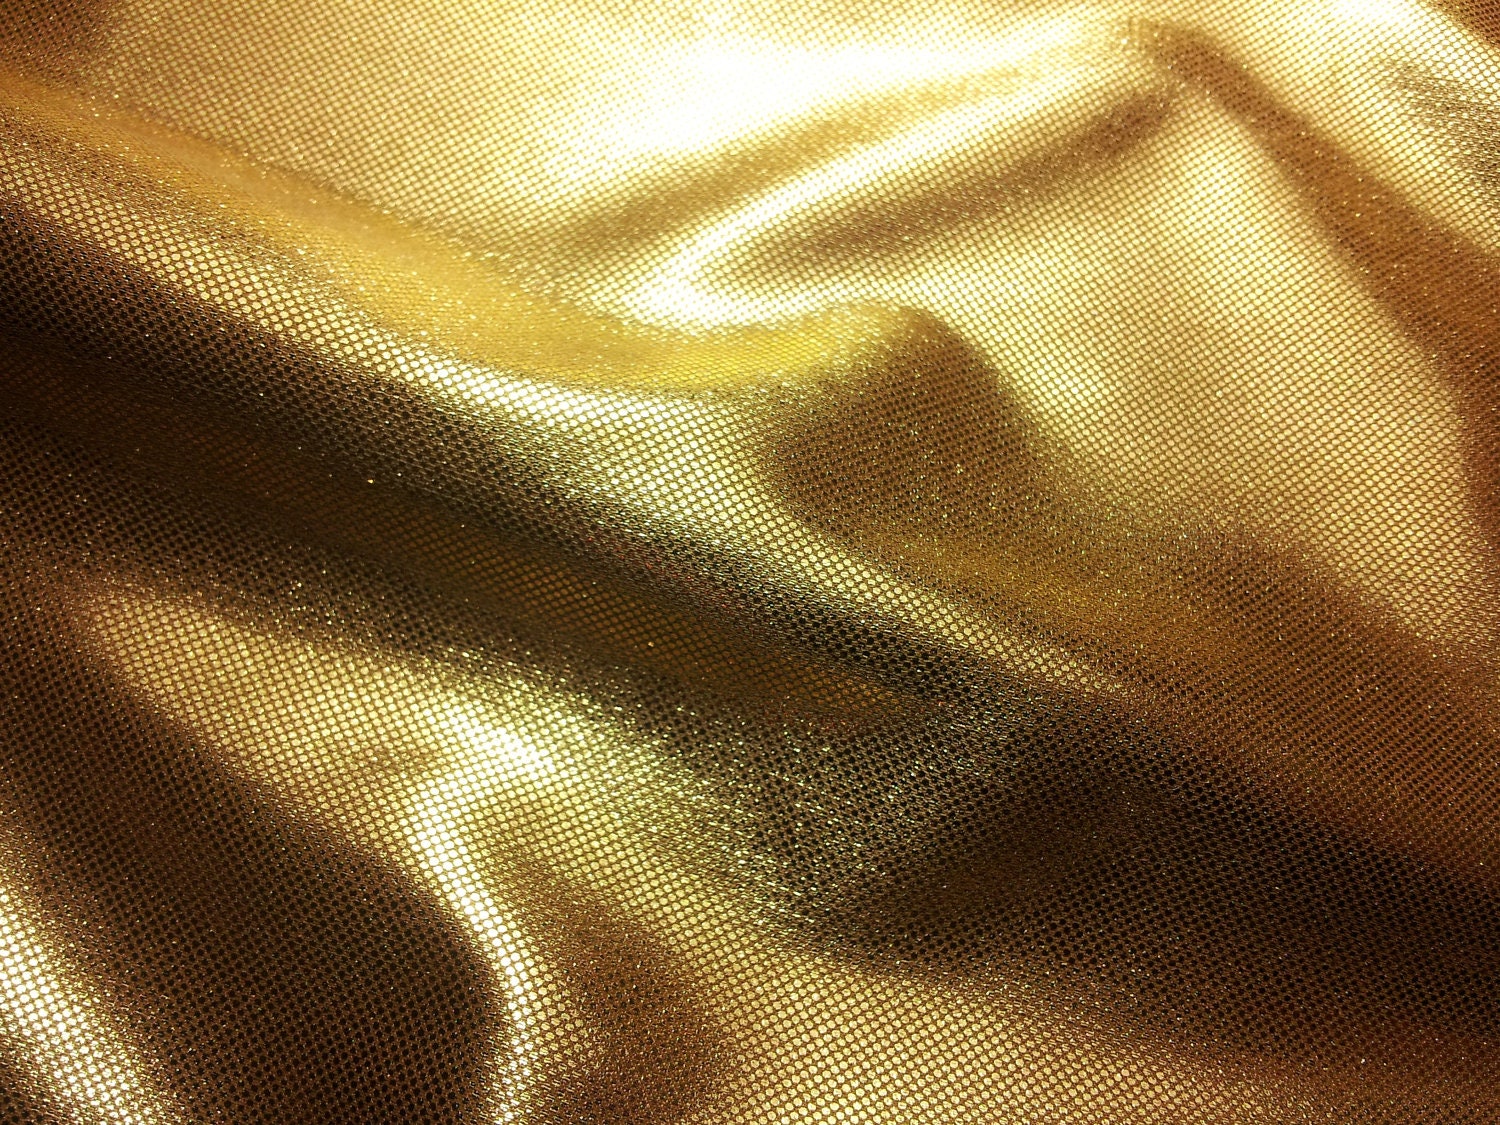 Shiny gold